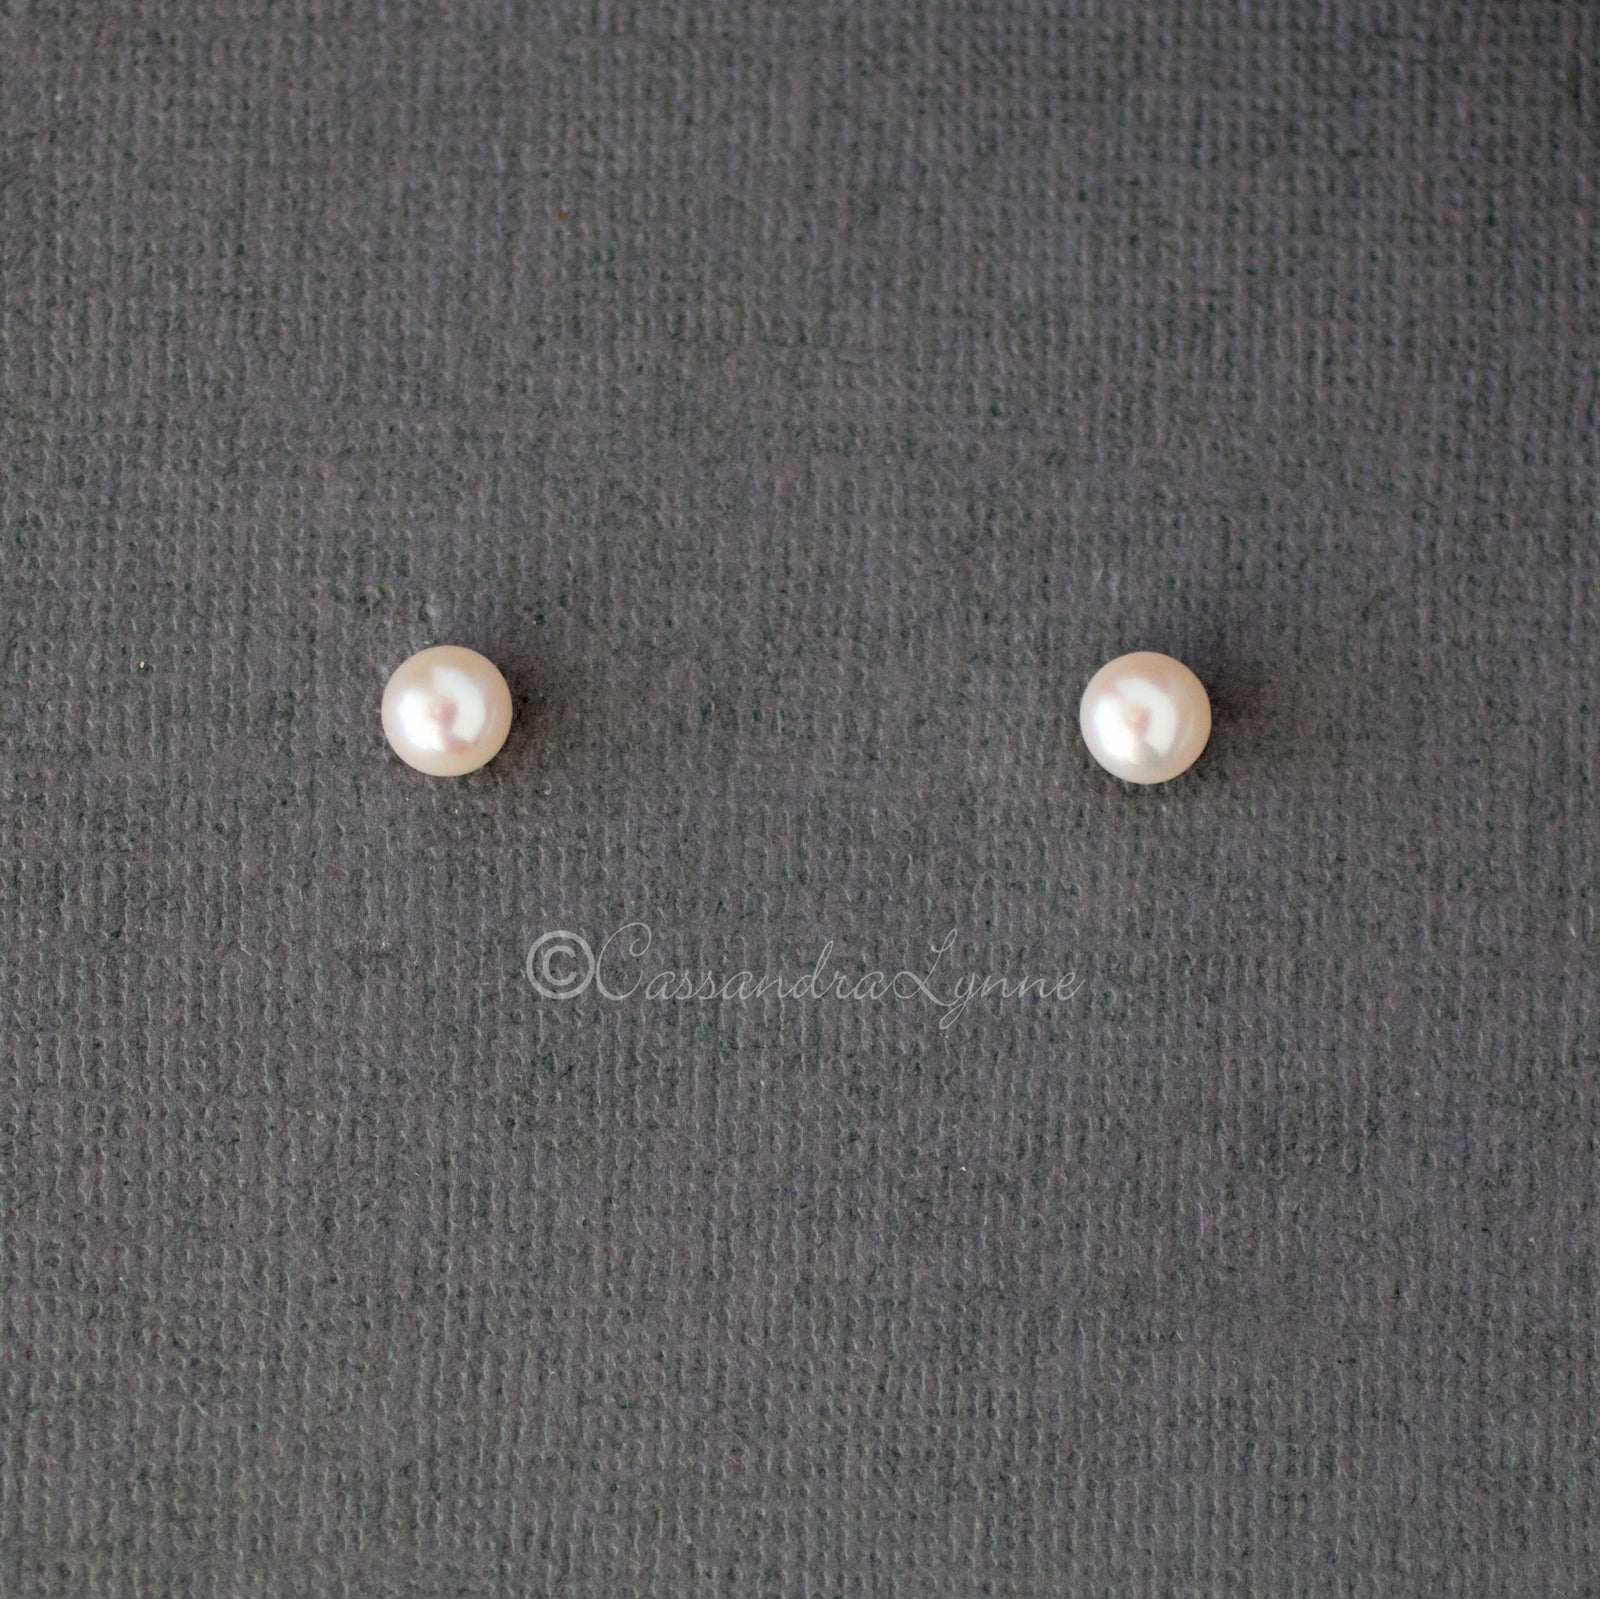 6MM Freshwater Pearl Stud Earrings